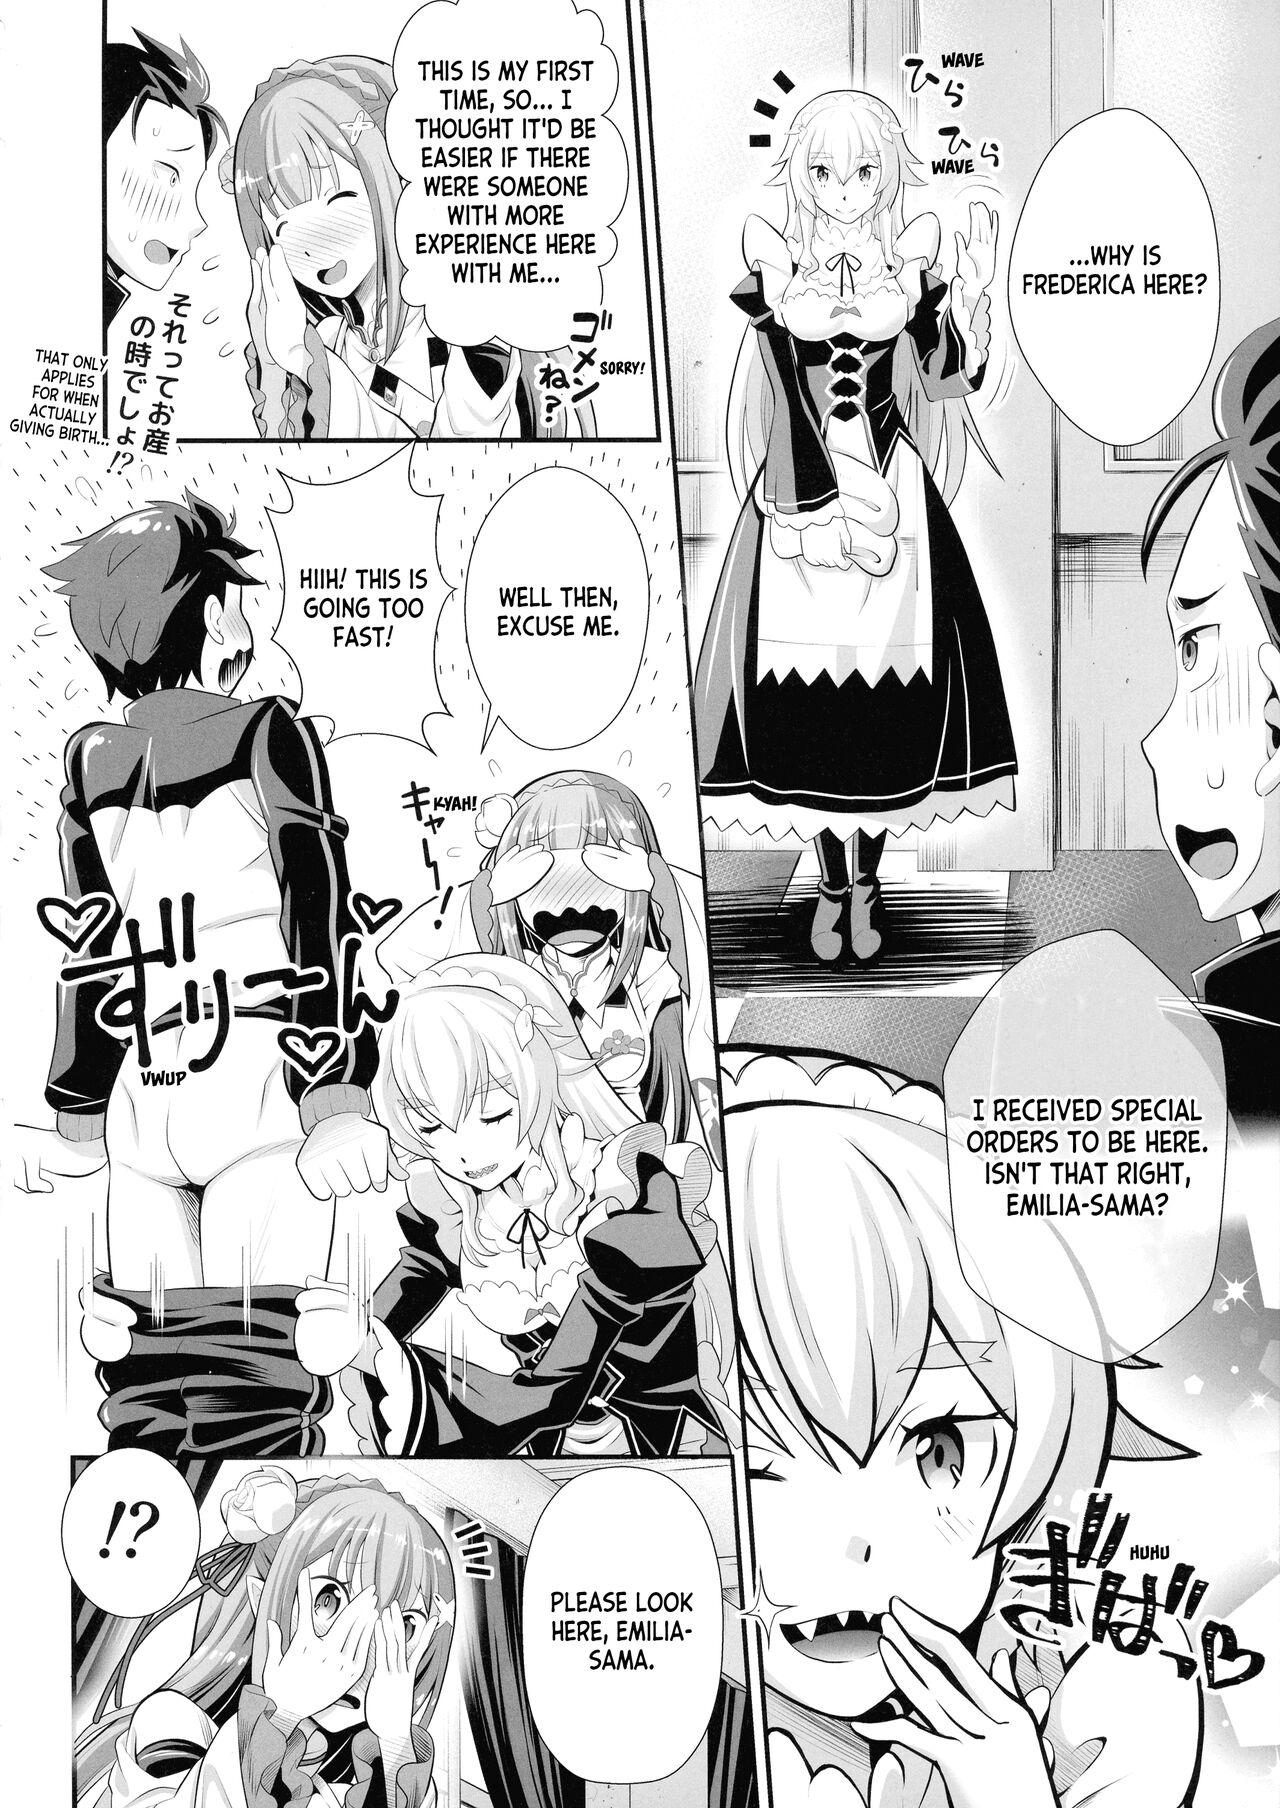 Cumming Re: Zero na Maid-san vol. 3 - Re zero kara hajimeru isekai seikatsu Ecchi - Page 6